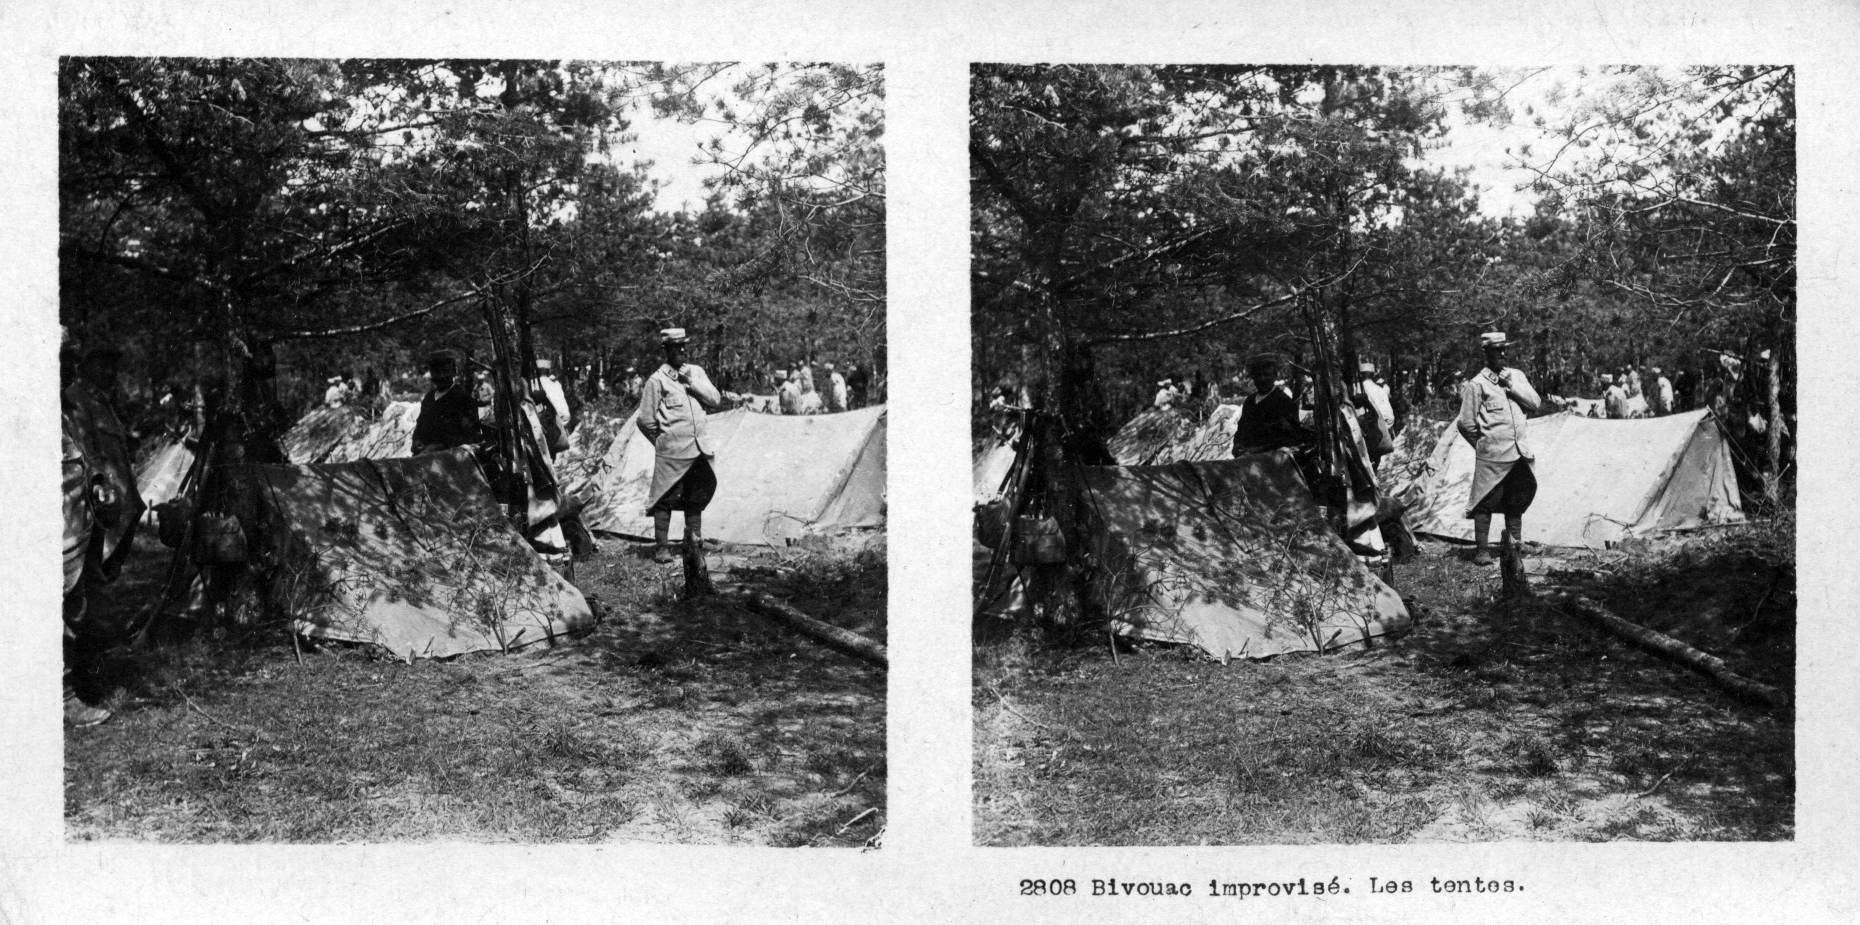 "Bivouac improvisé. Les tentes" - Improvised bivouac. Tents.